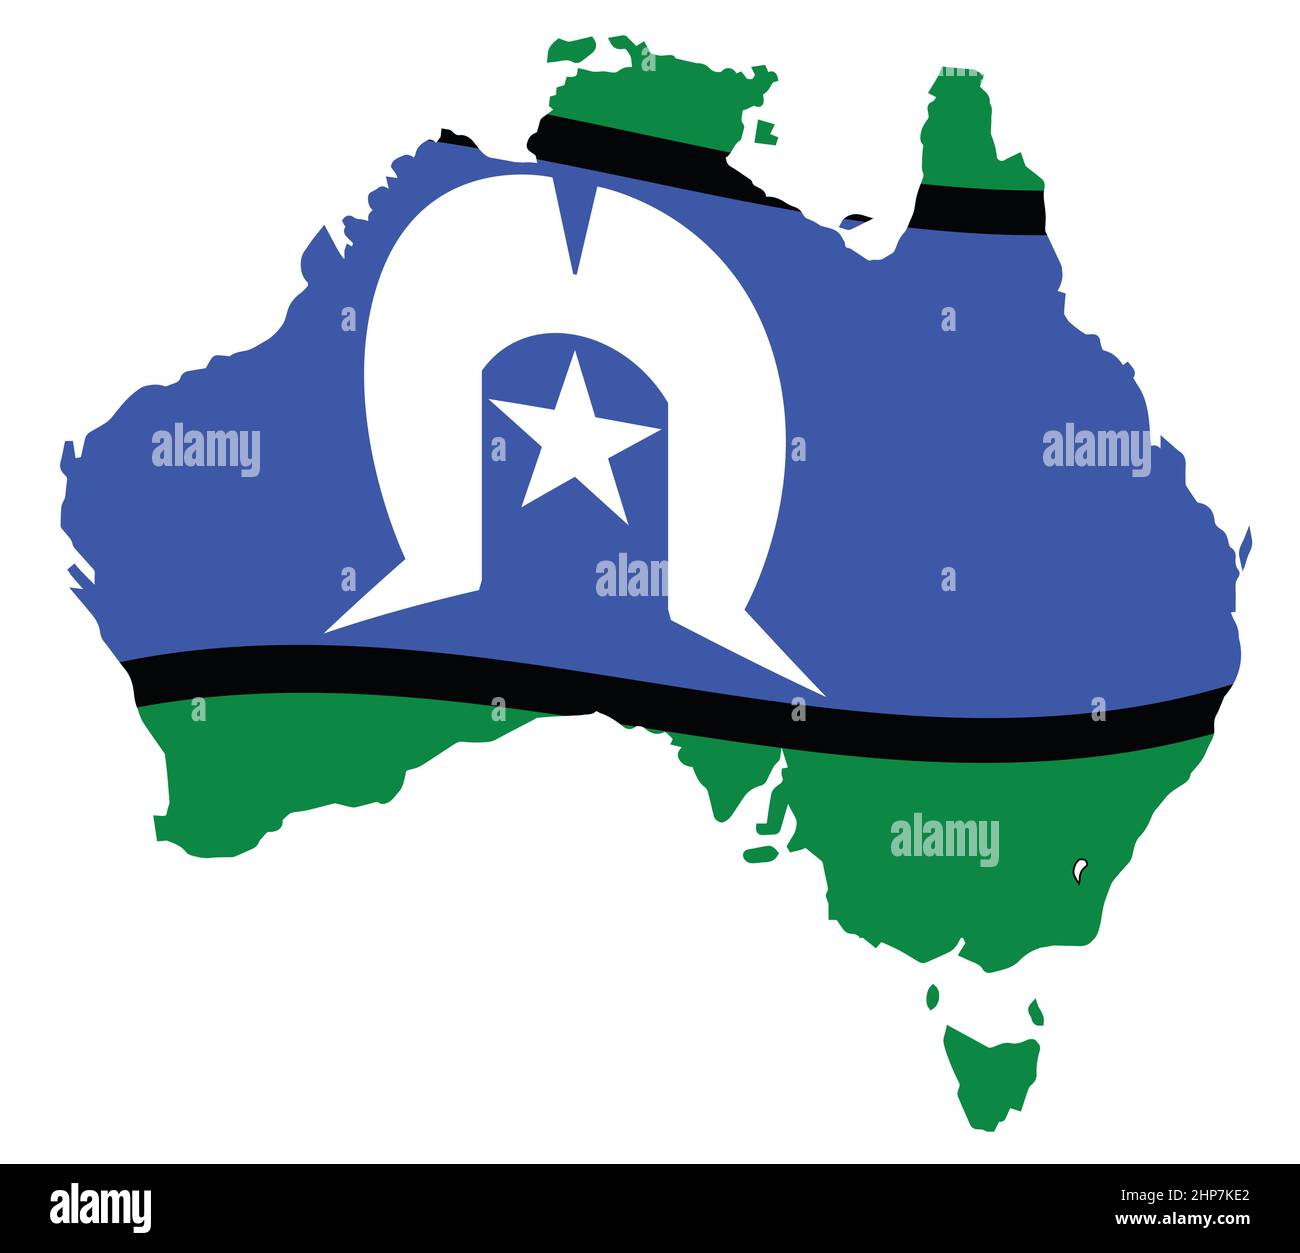 Torres Strait Islander Flag On Map Of Australia Stock Vector